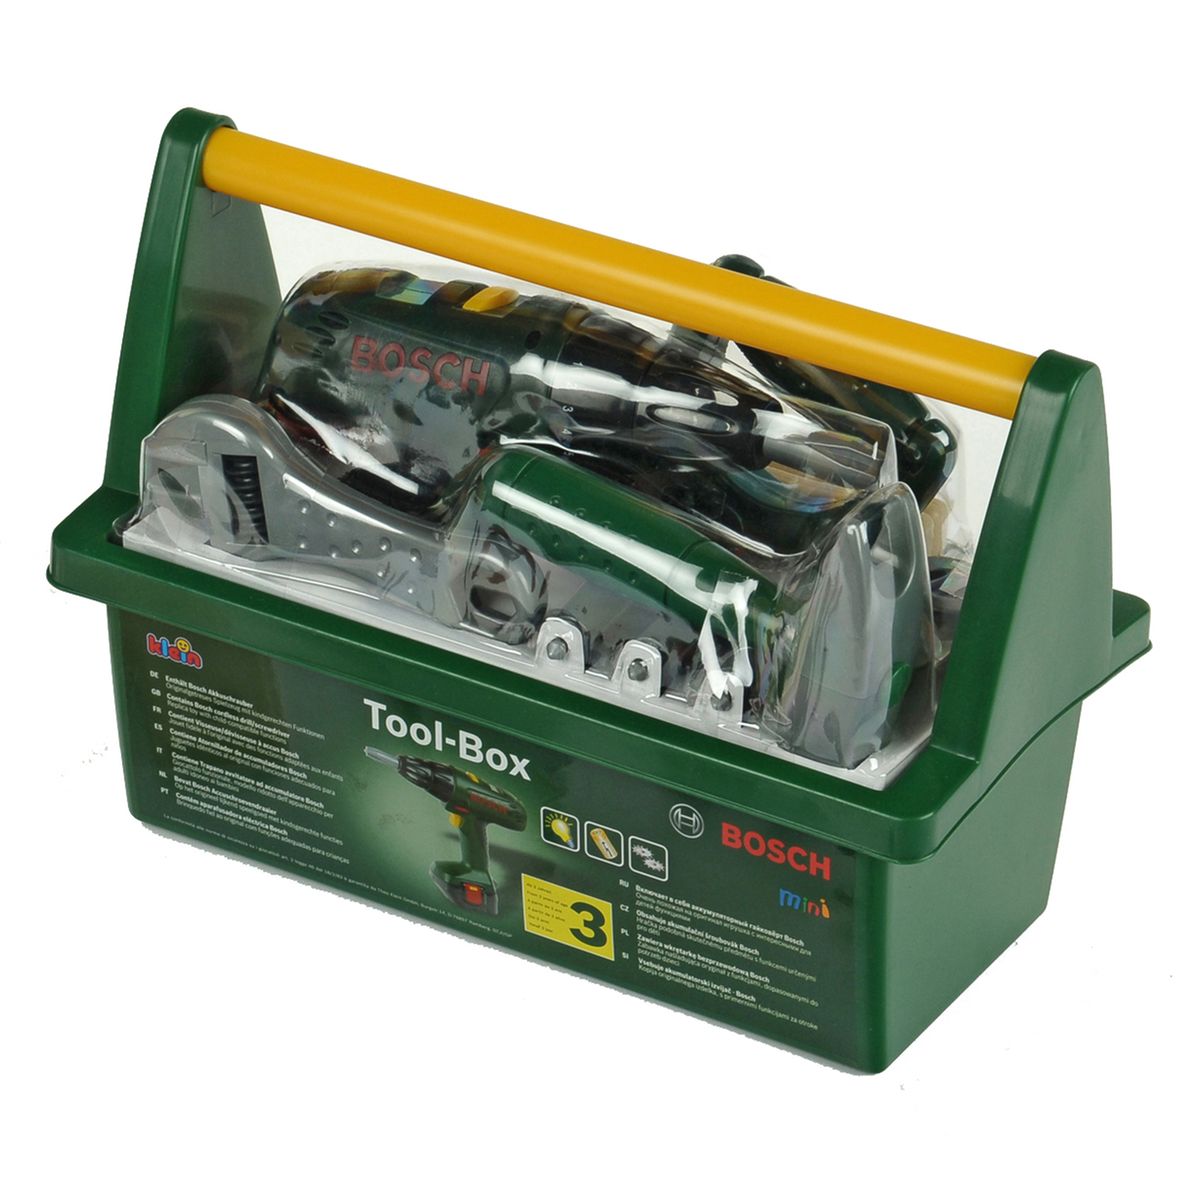 Caisse à outils Bosch avec visseuse - N/A - Kiabi - 29.49€